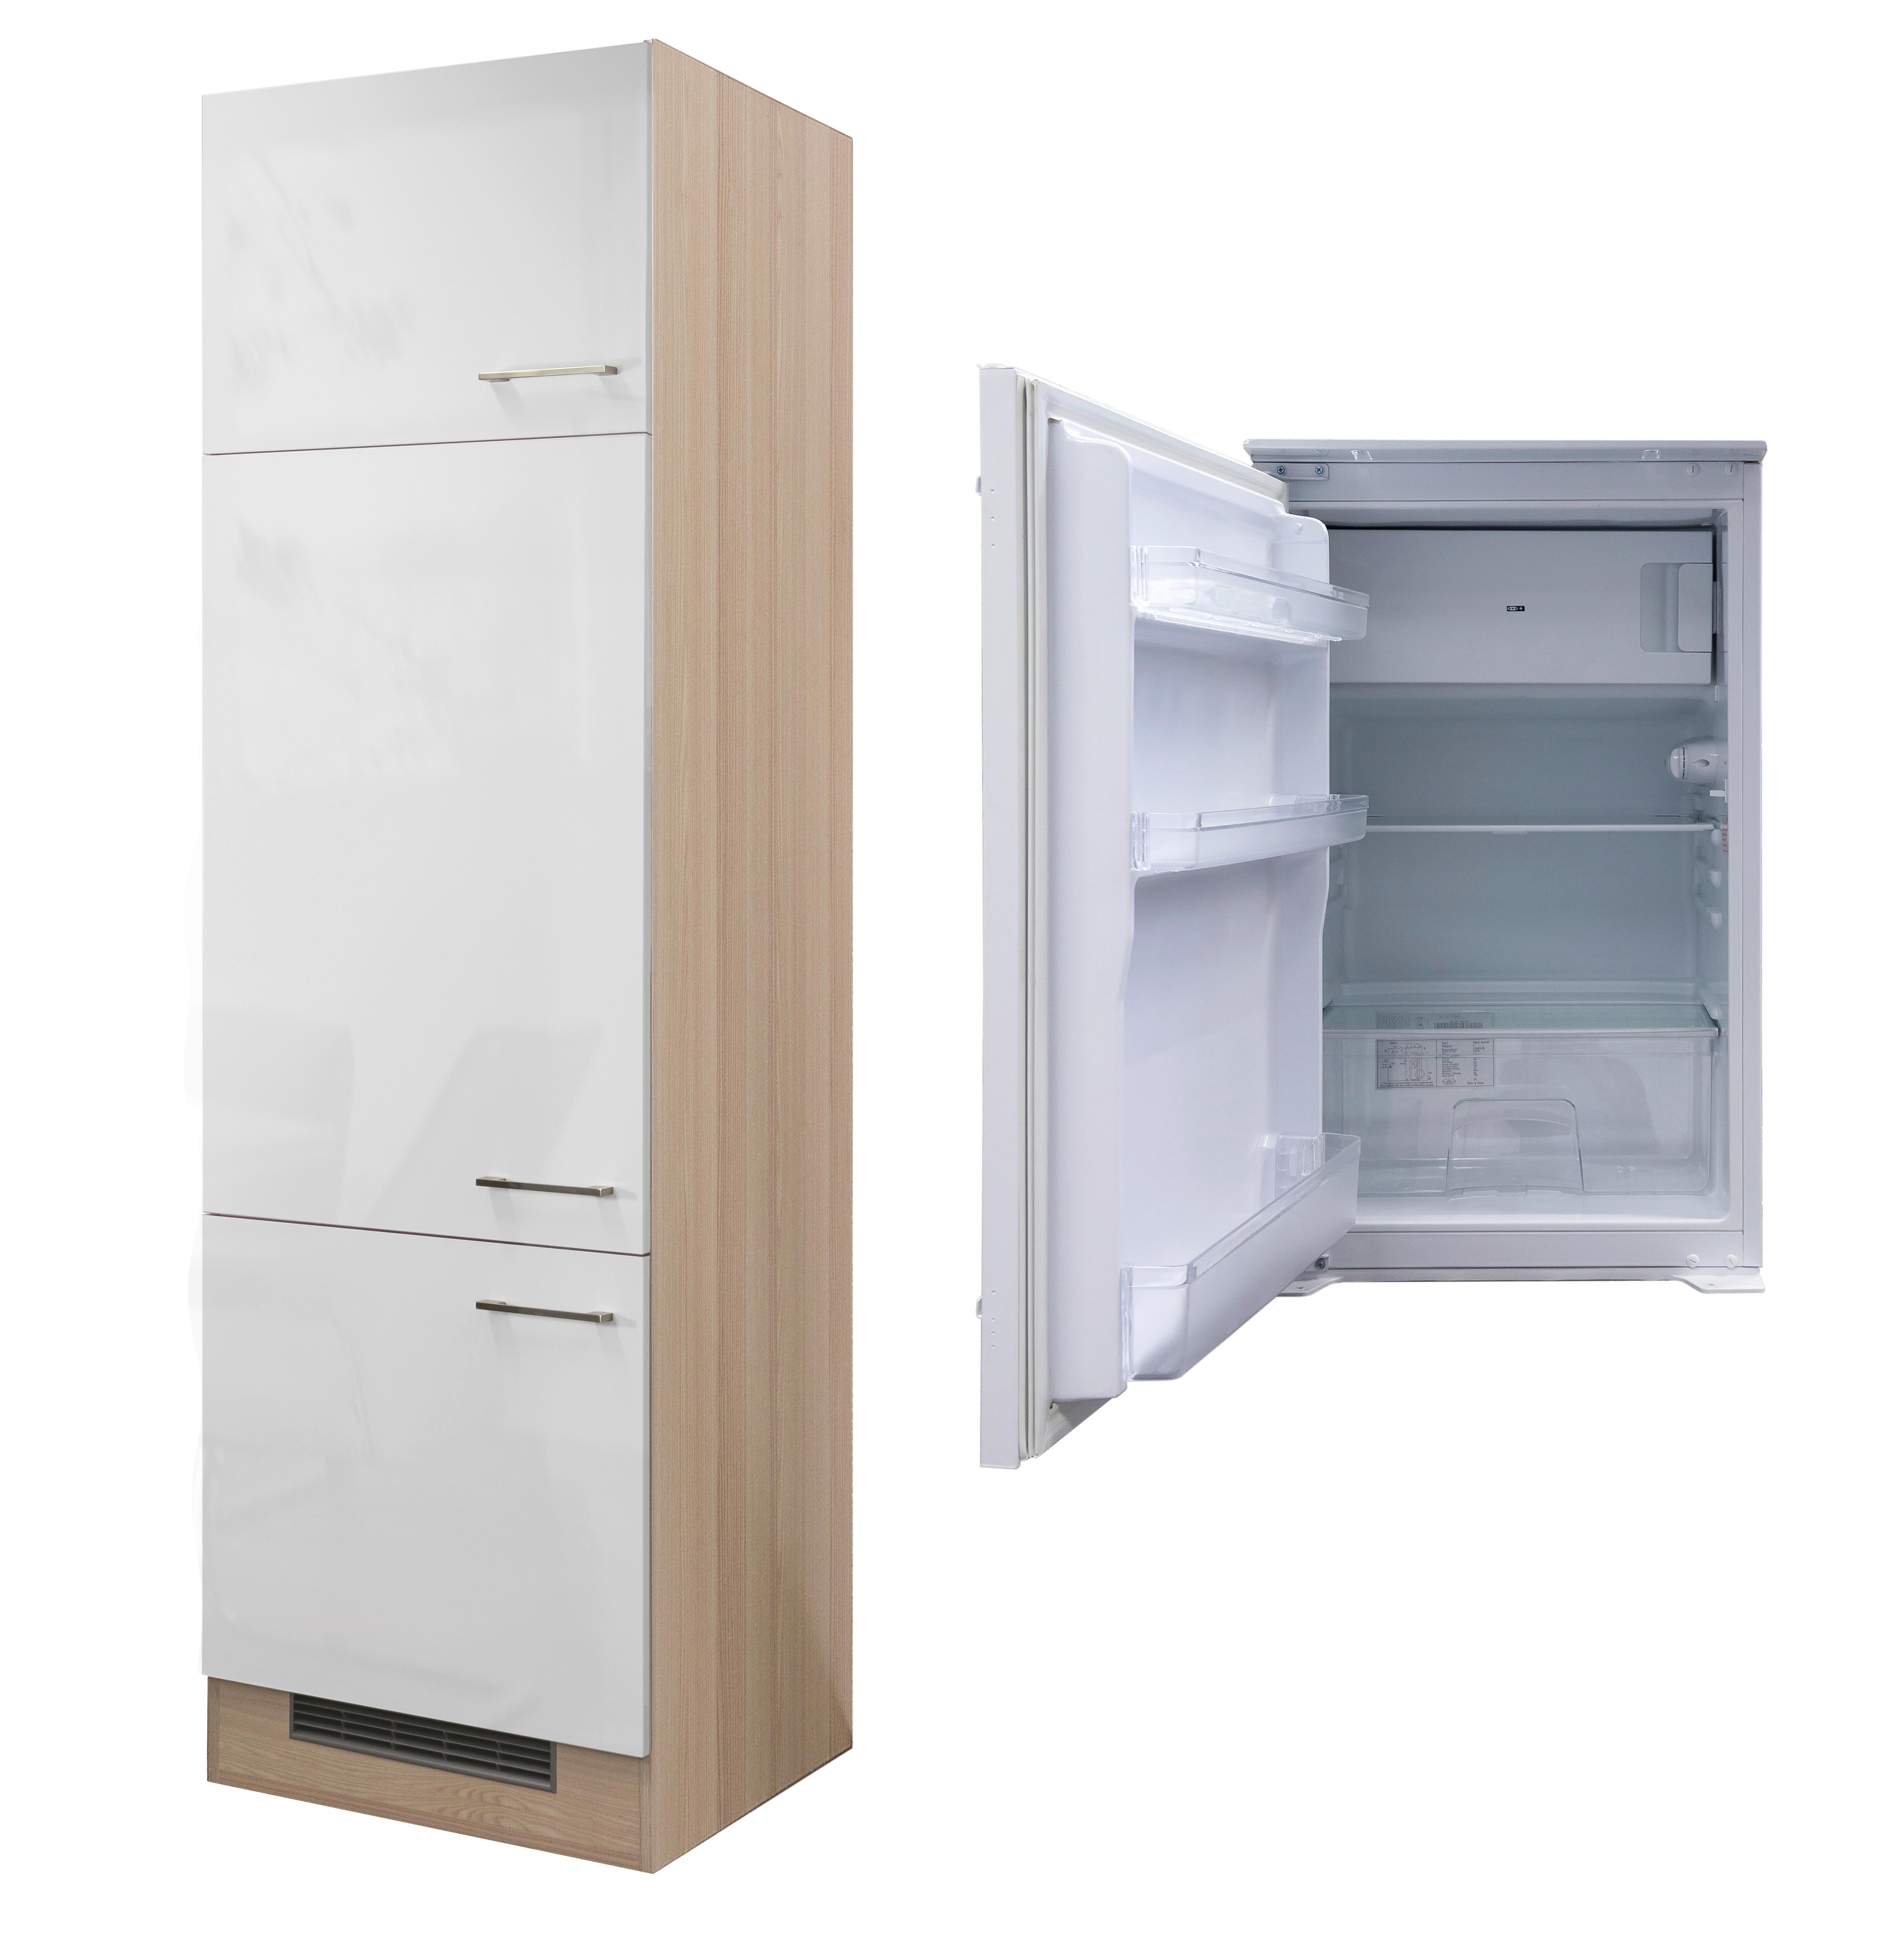 einen Dreitüriger Kühlschrank Umbauschrank für